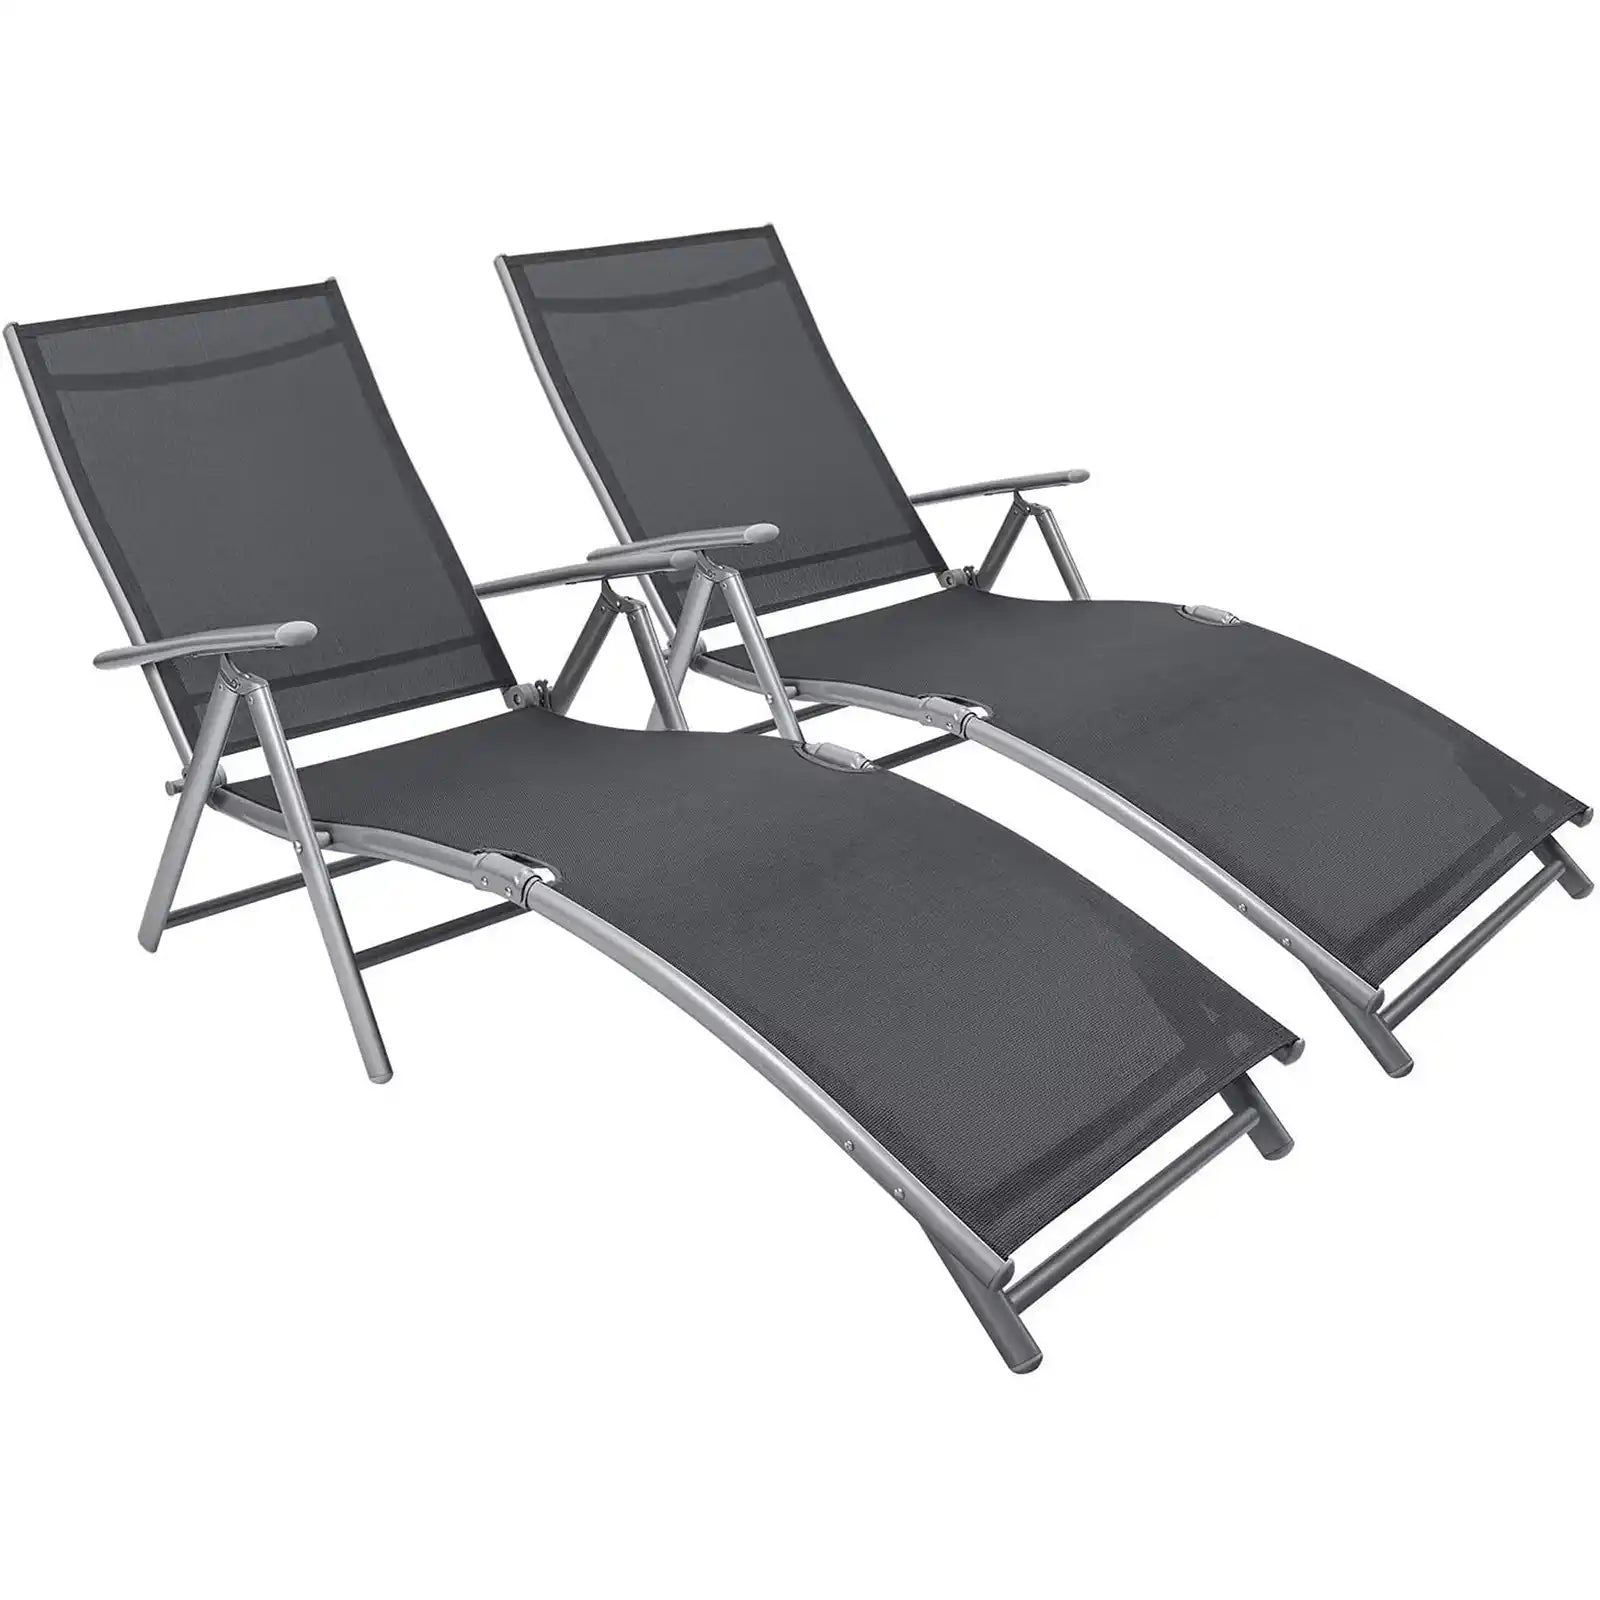 Chaise Lounge ajustable para patio al aire libre y junto a la piscina, sillones reclinables plegables, juego de 2